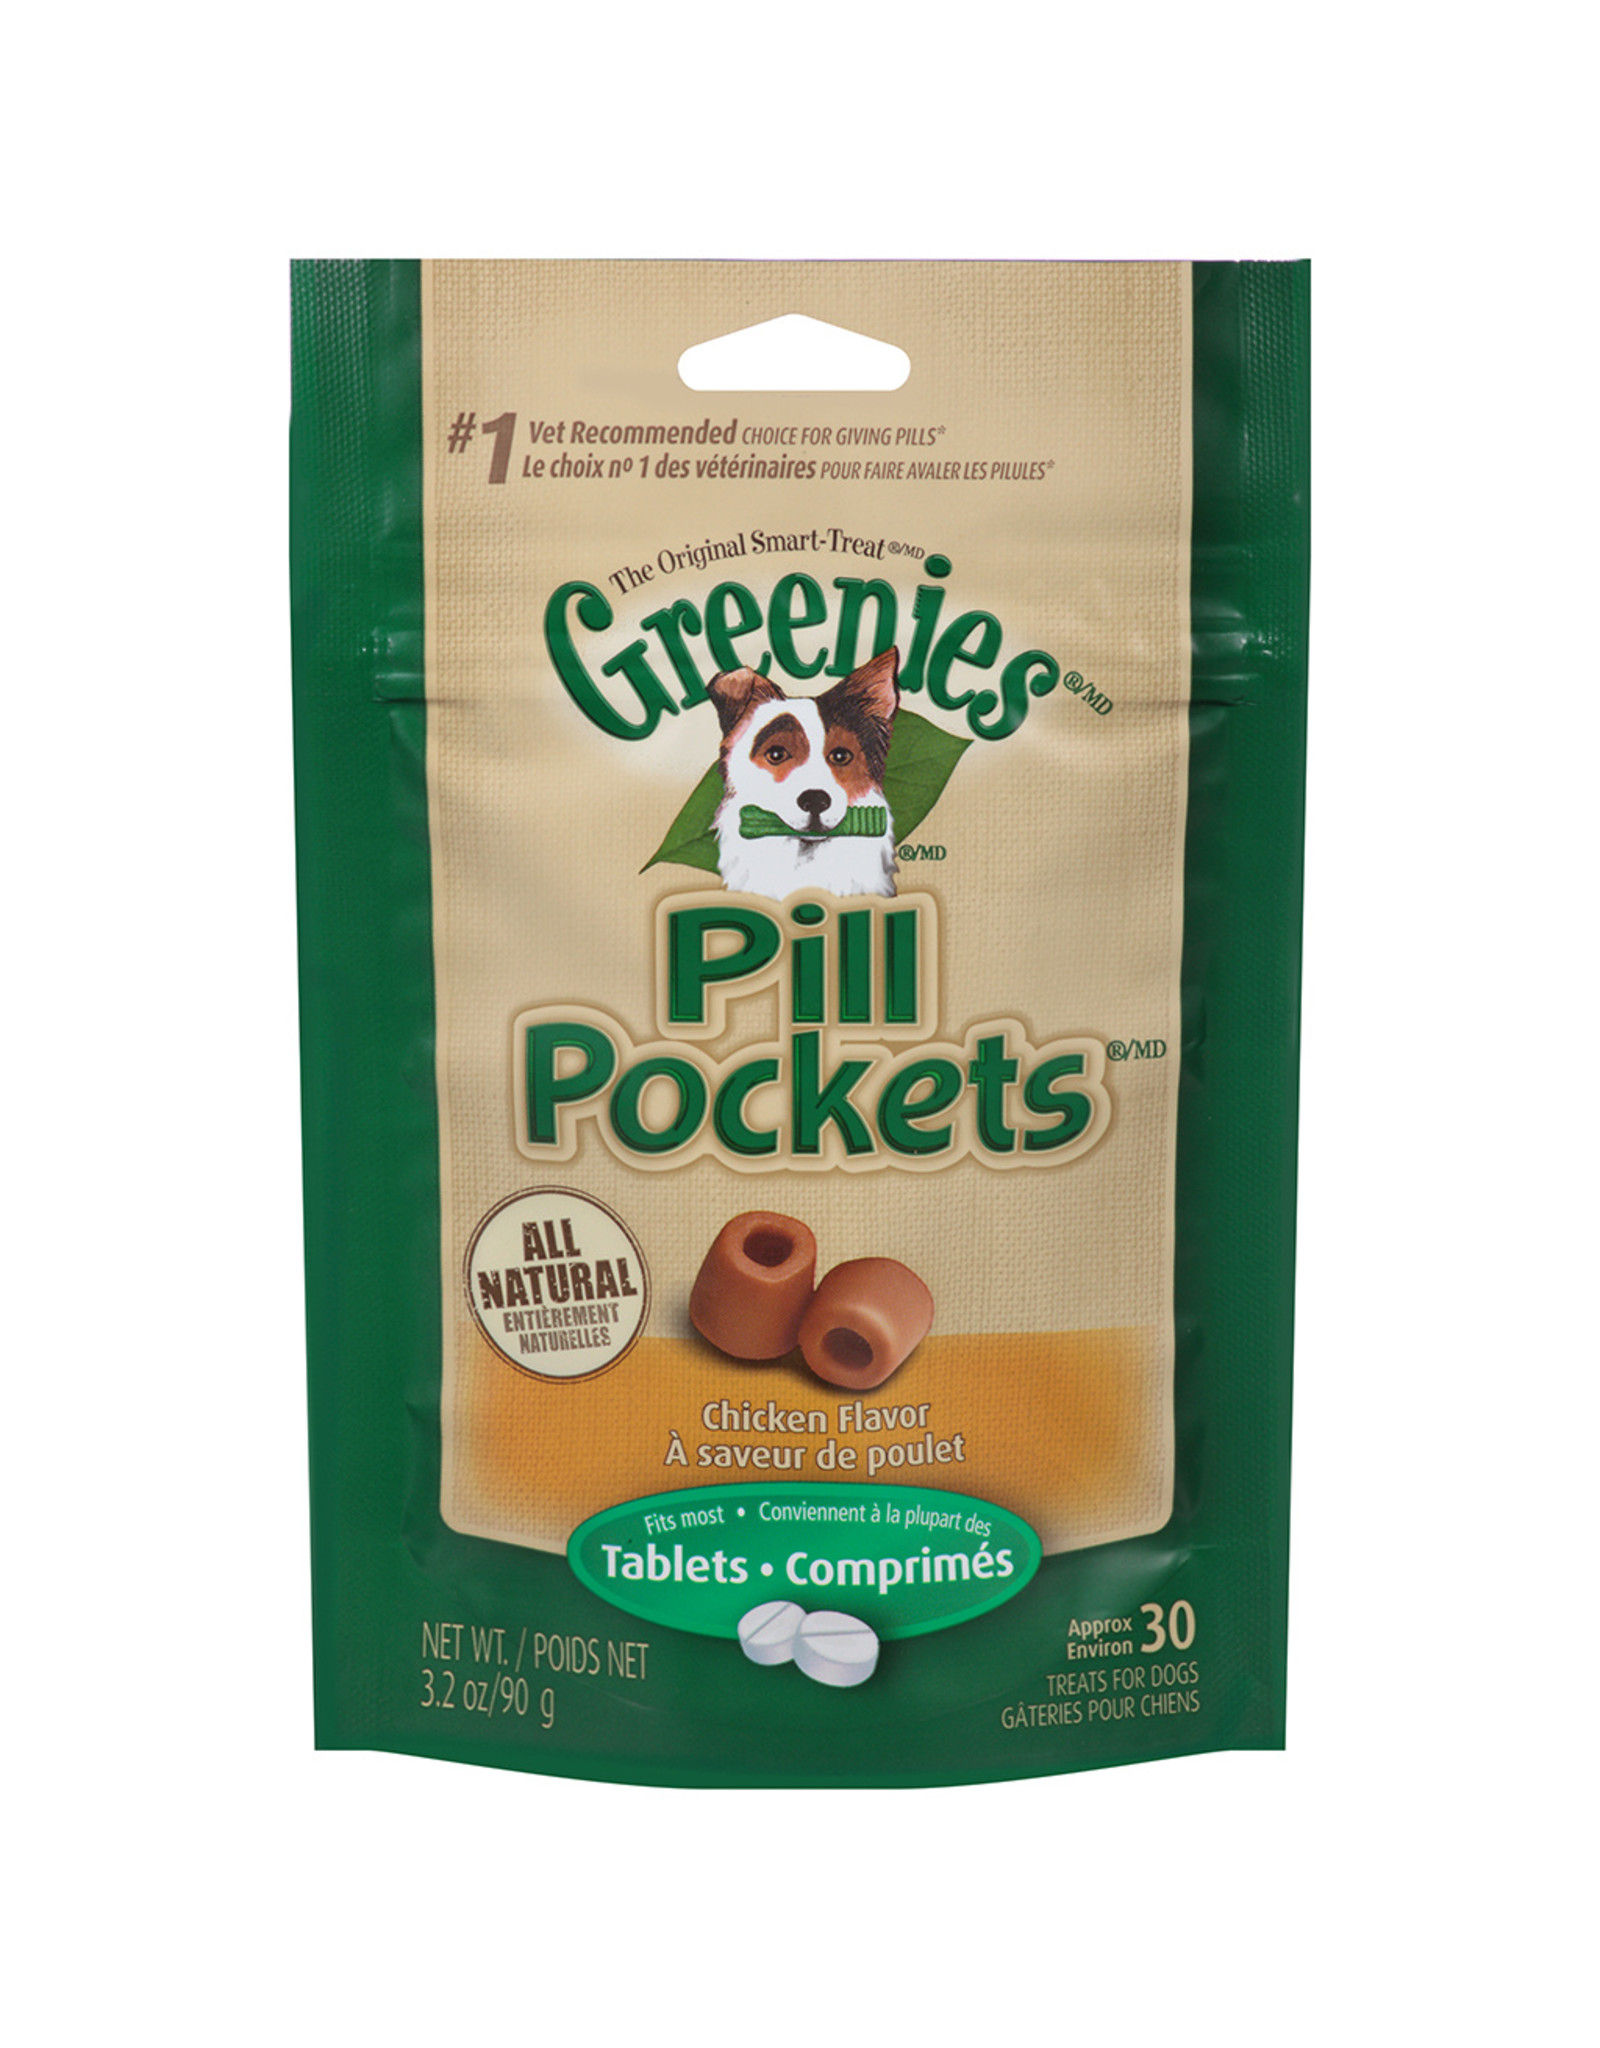 Greenies Pill Pockets Chicken 30 Tabs / 3.2OZ